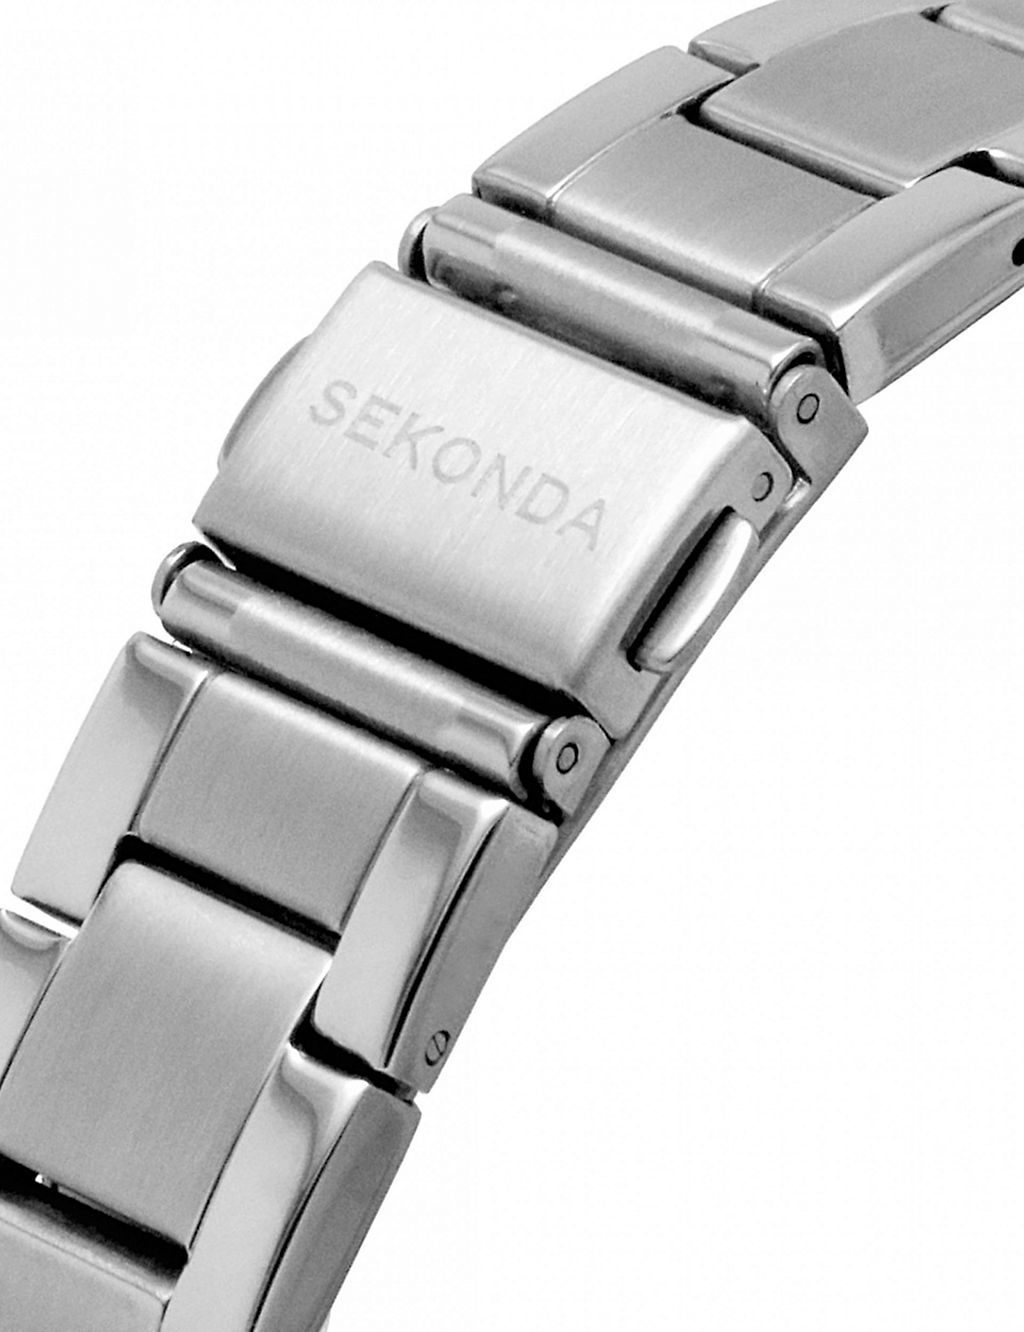 Sekonda Stainless Steel Watch 5 of 7